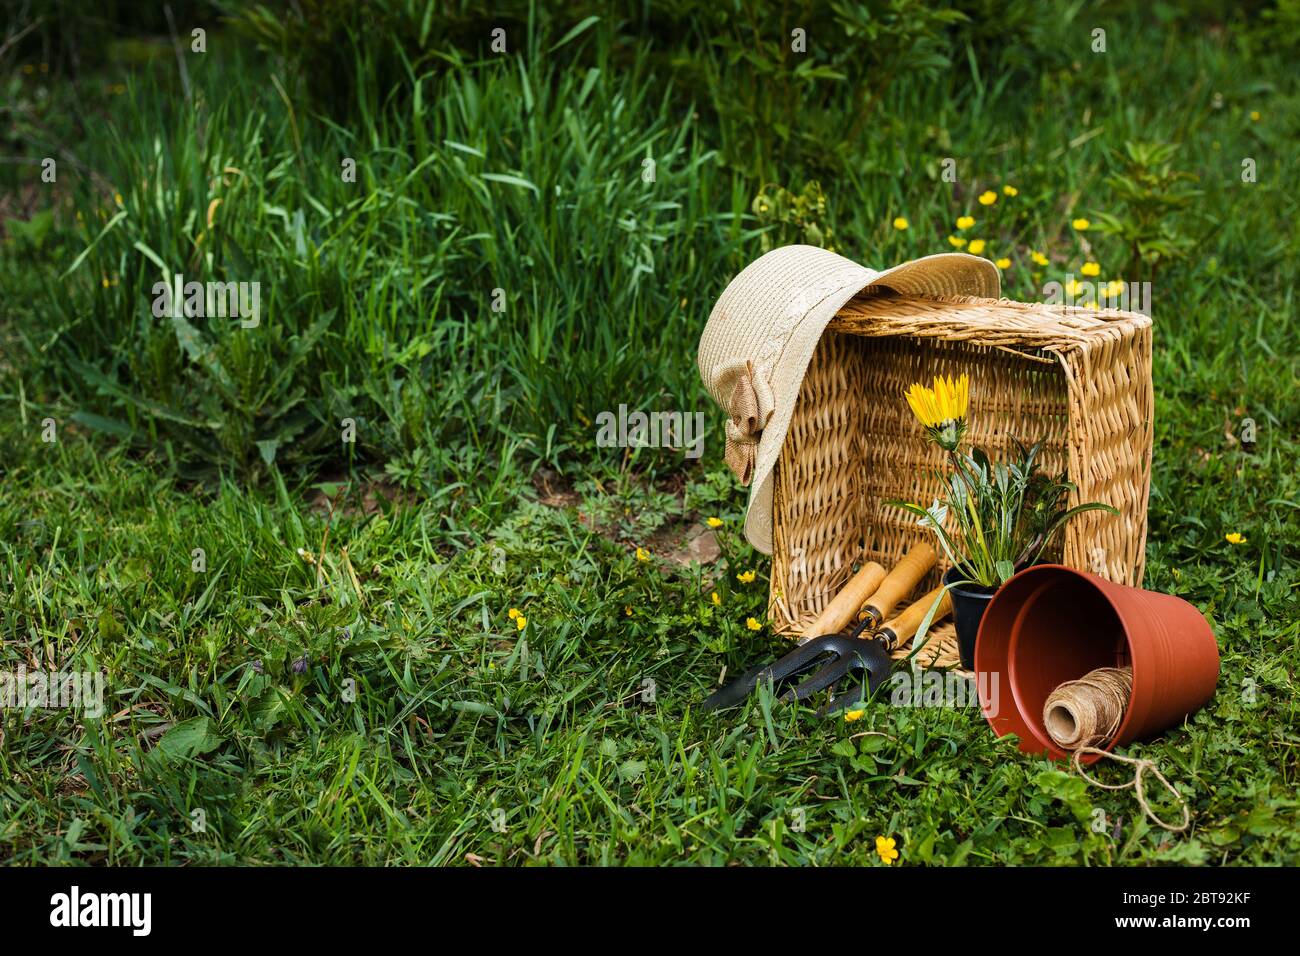 Frühlingsblumen in Korbkorb mit Gartengeräten. Konzept der gardering. Stockfoto